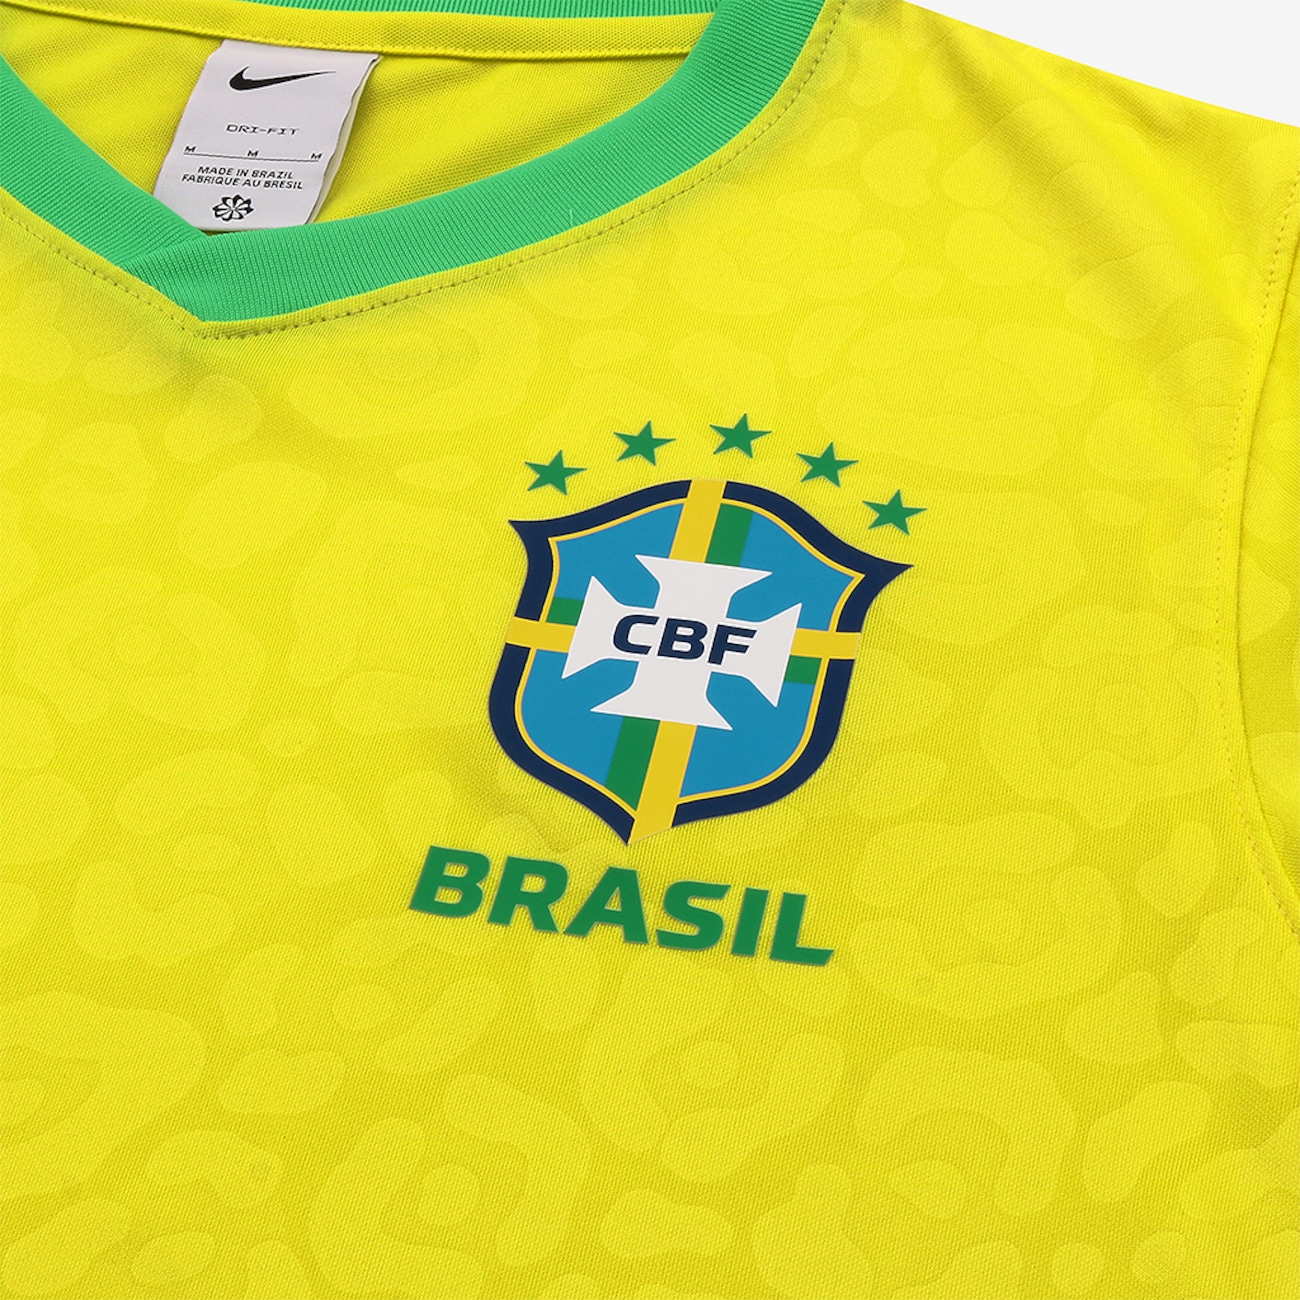 Camisa Seleção Brasileira Oficial Home Tamanho P, Roupa Esportiva  Masculino Nike Nunca Usado 94066435